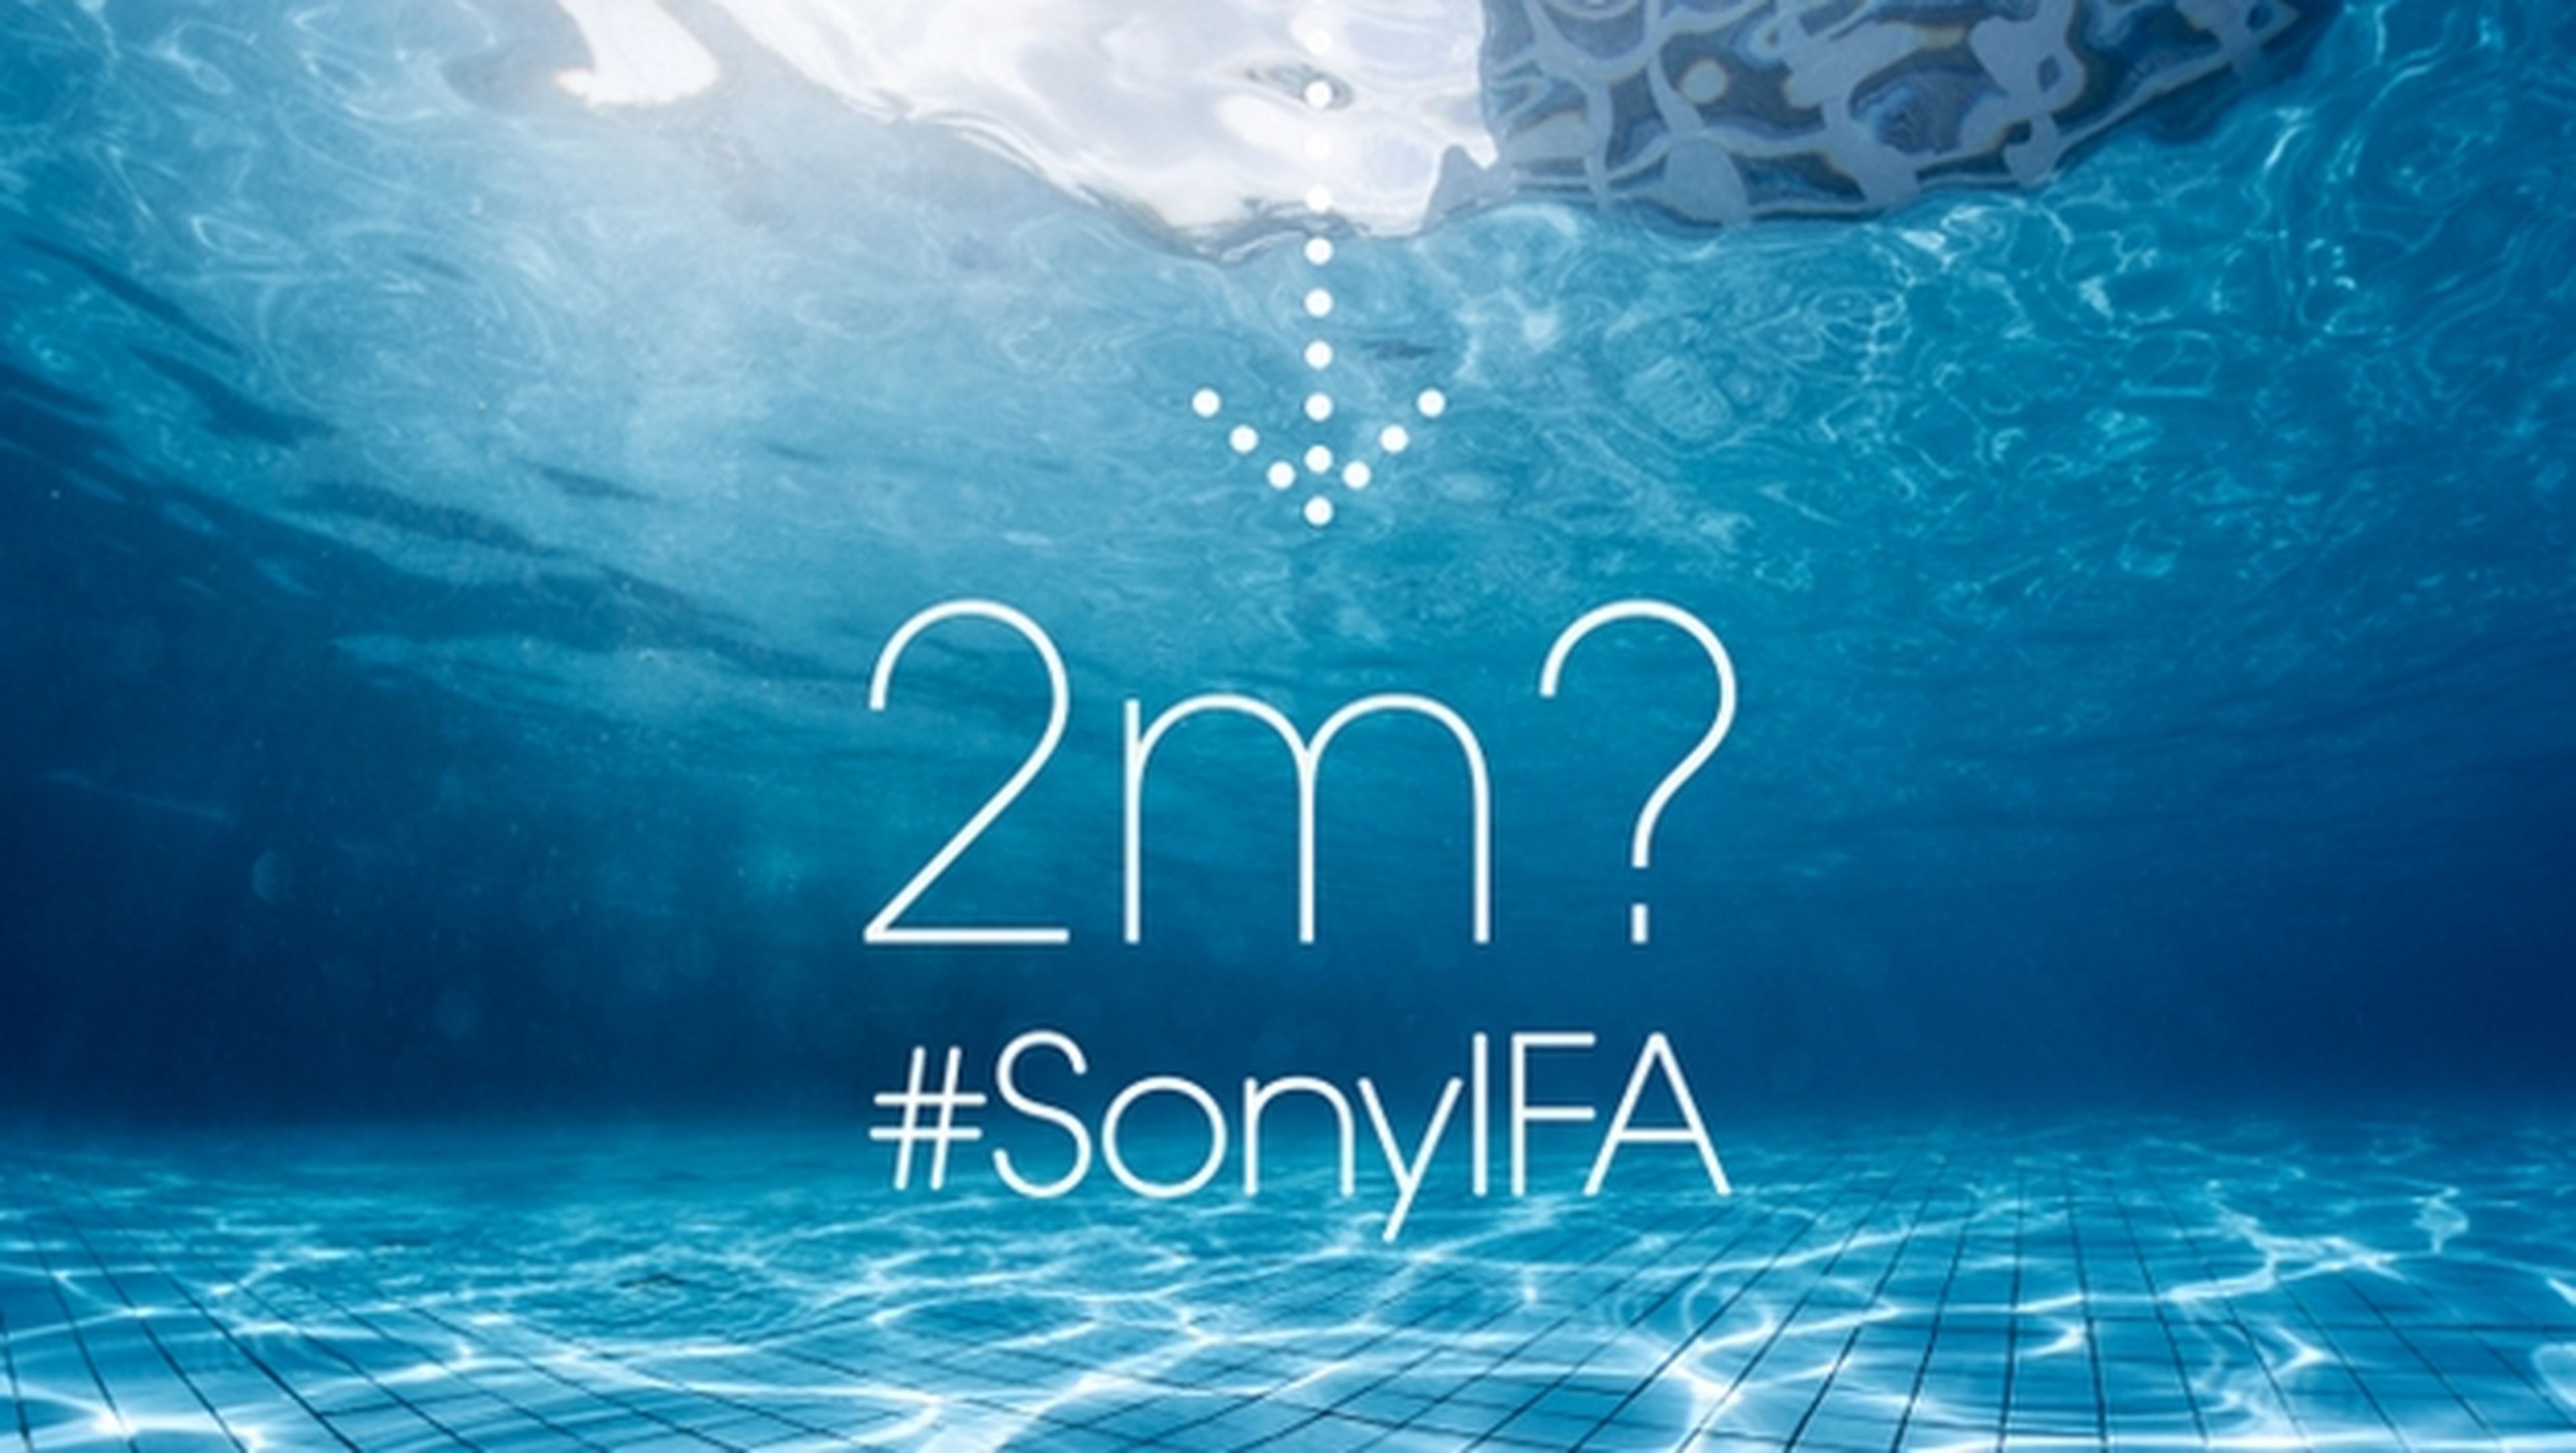 Sony en IFA 2014: Sony Xperia Z3 podría ser sumergible a más de 2 metros.